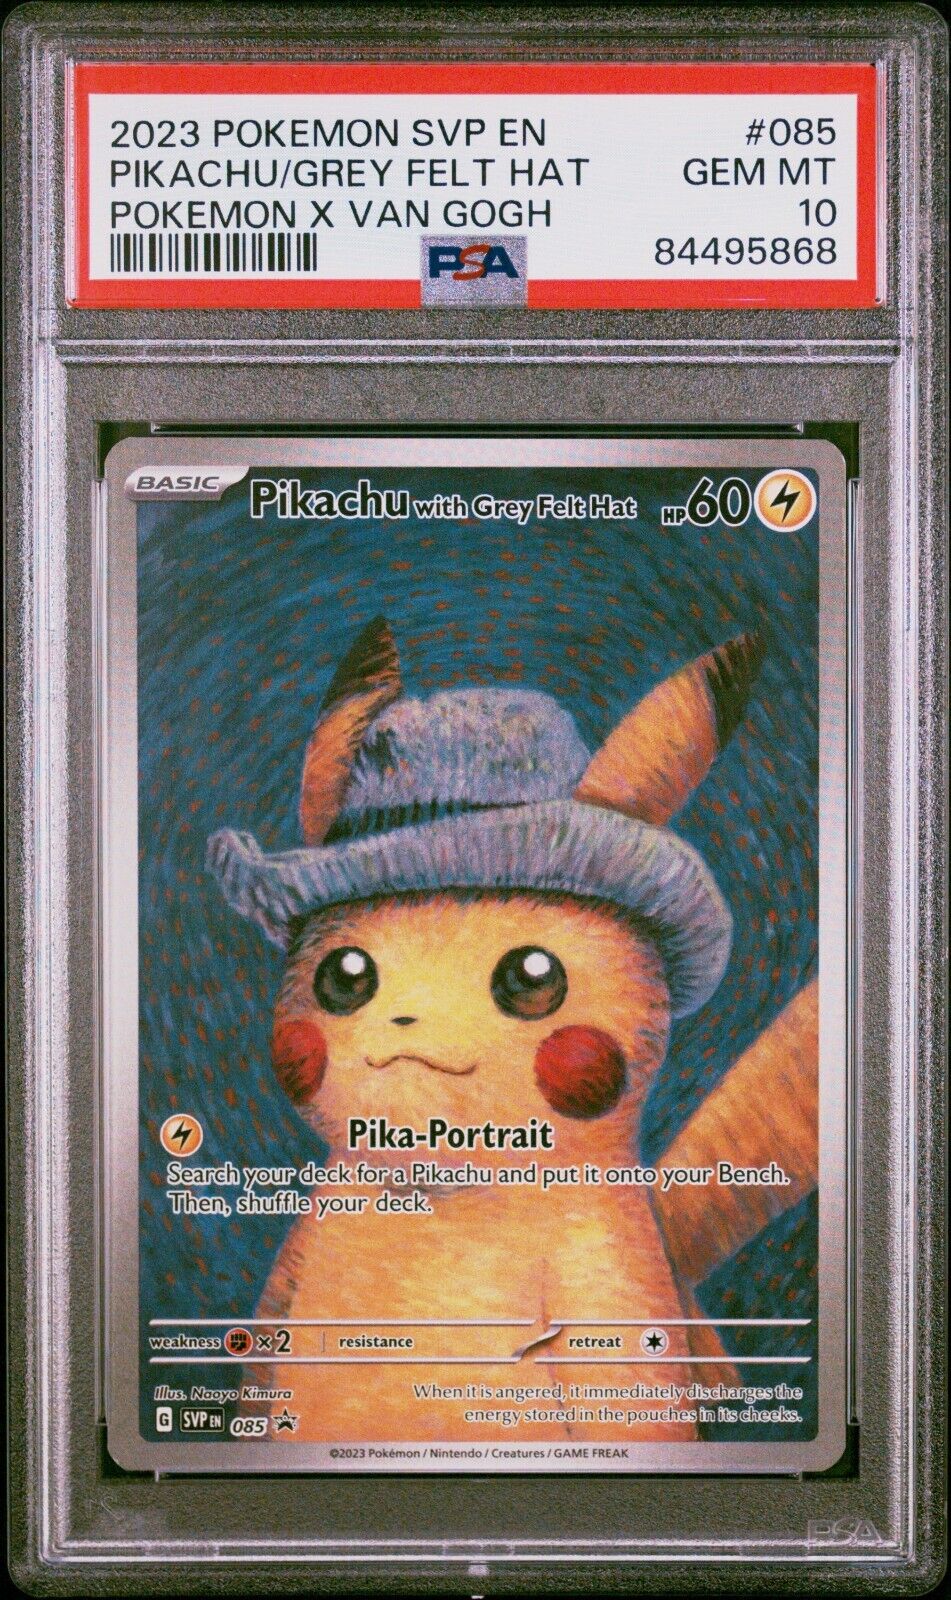 PSA 10 Van Gogh Pikachu with Grey Felt Hat 085 Black Star Promo Pokémon TCG